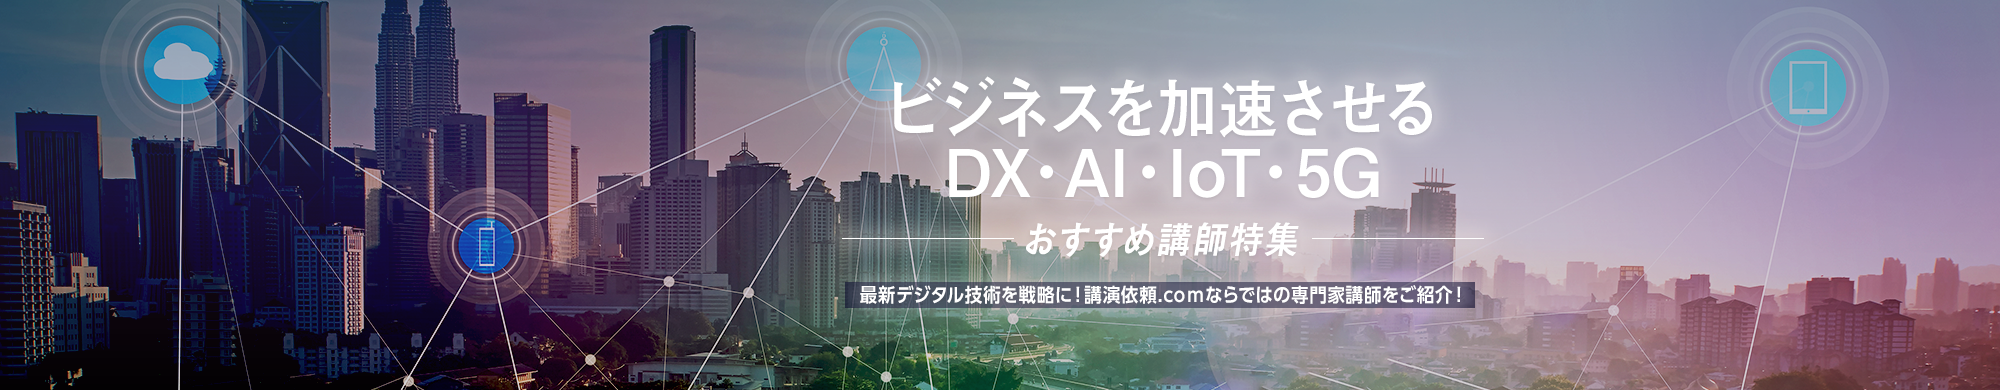 ビジネスを加速させるDX・AI・IoT・5G